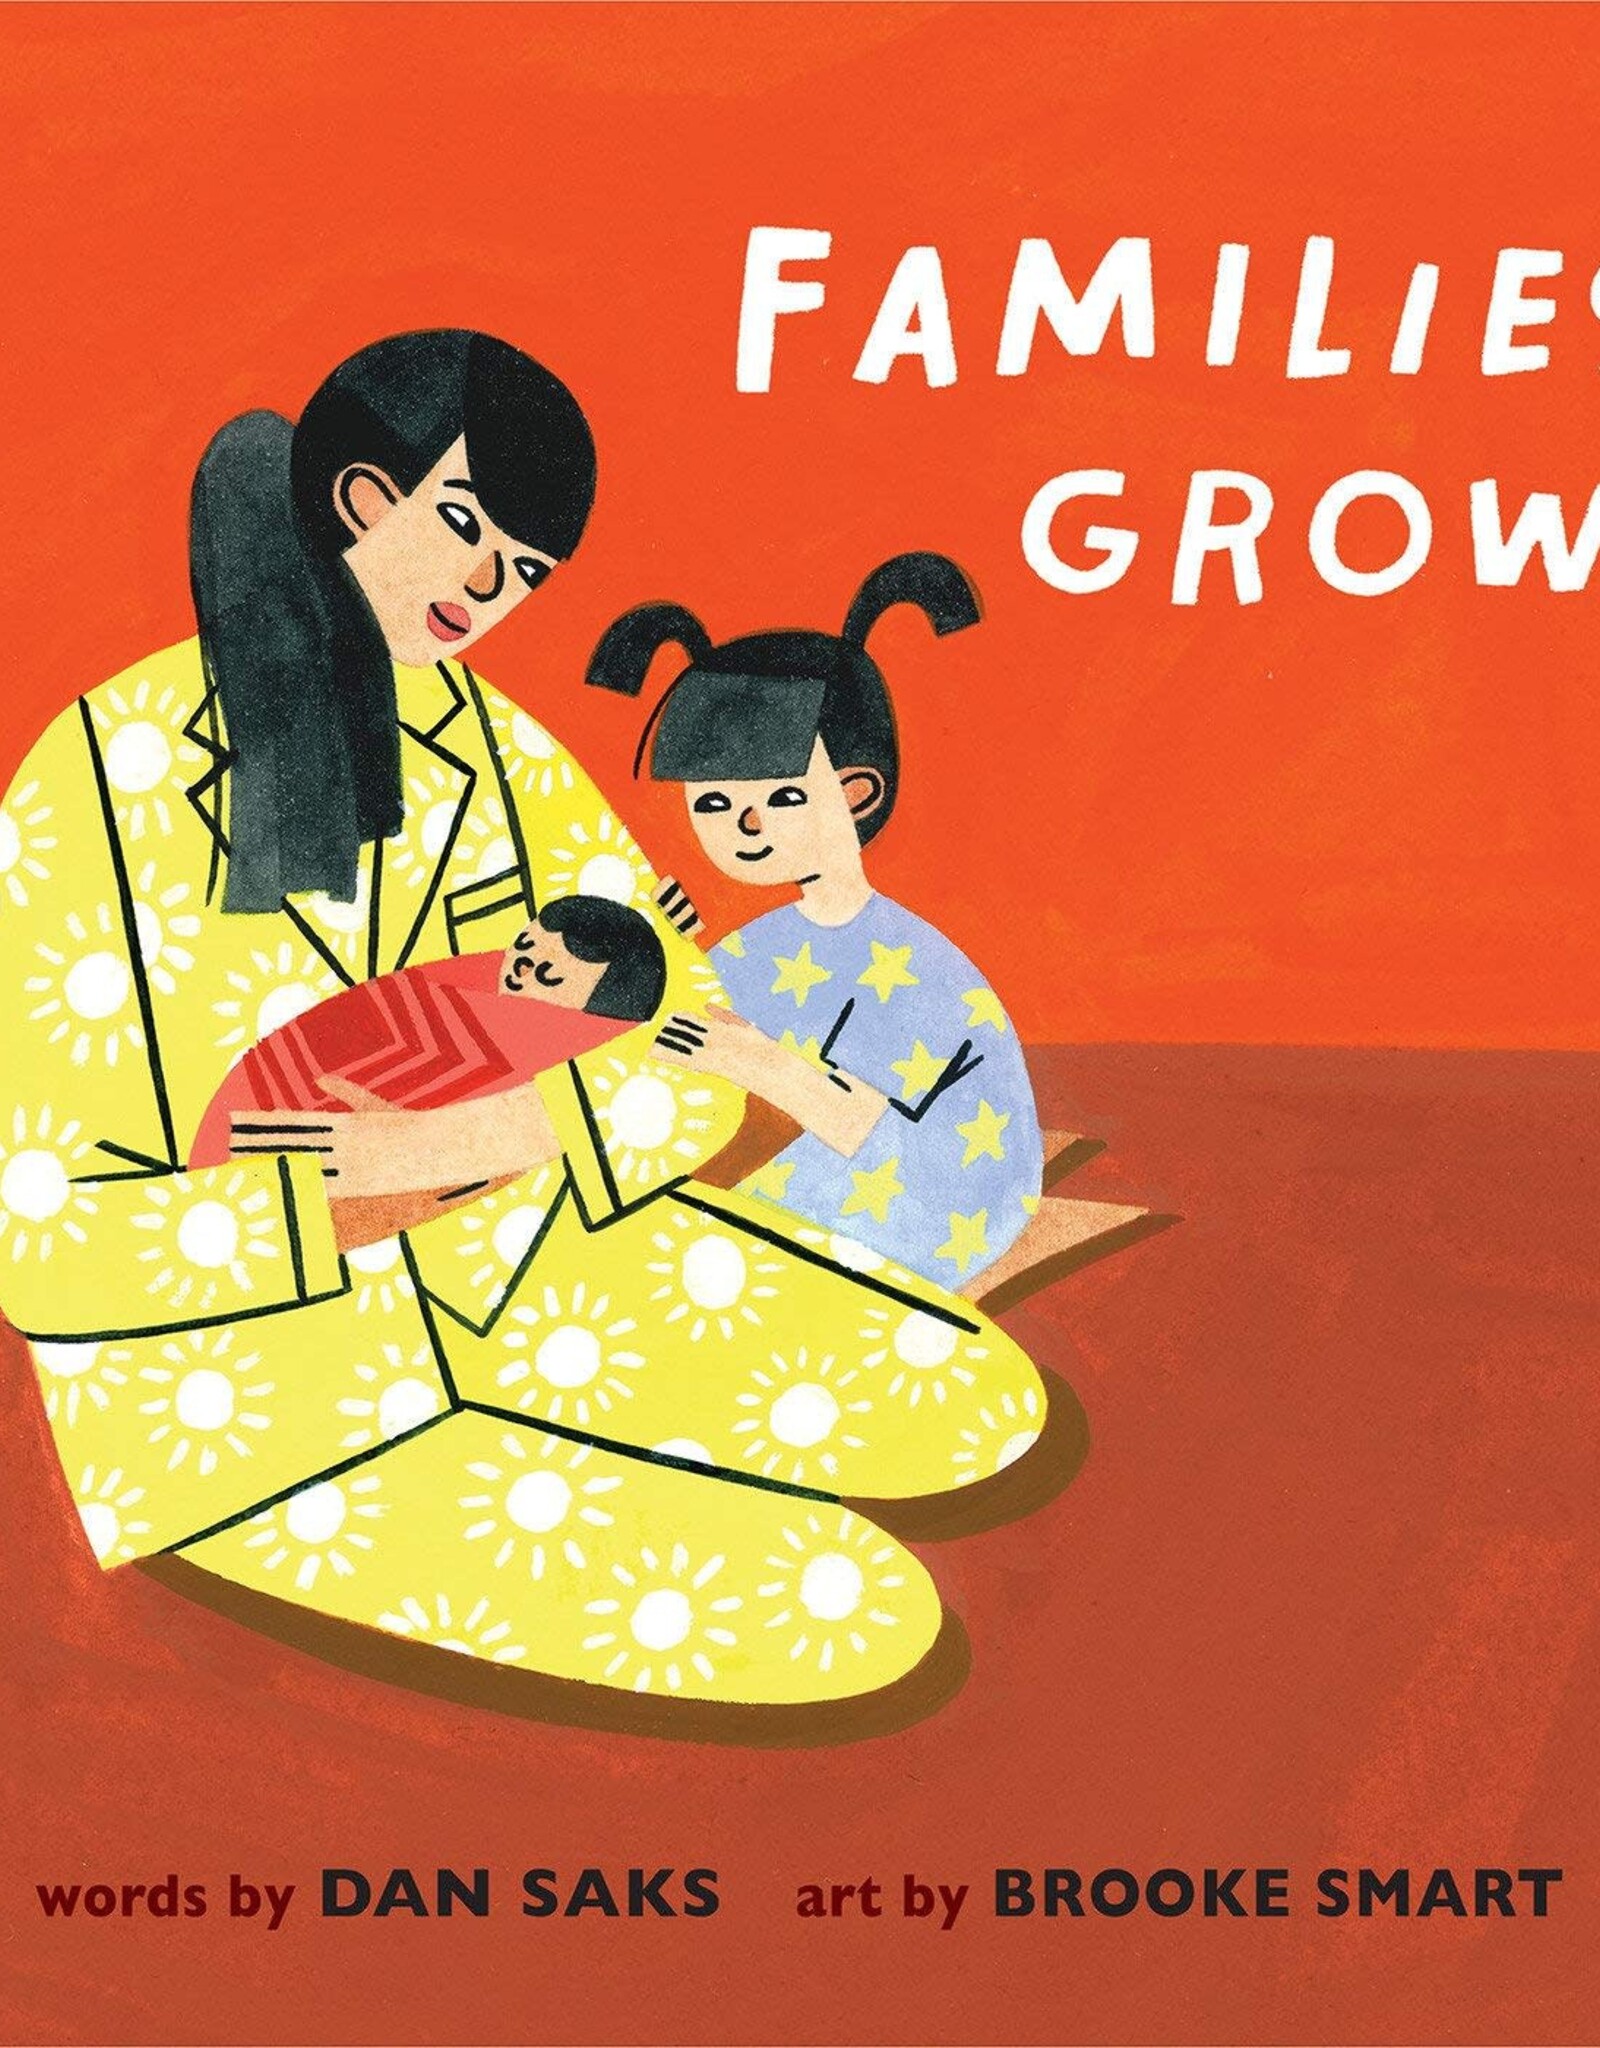 Random House/Penguin Families Grow